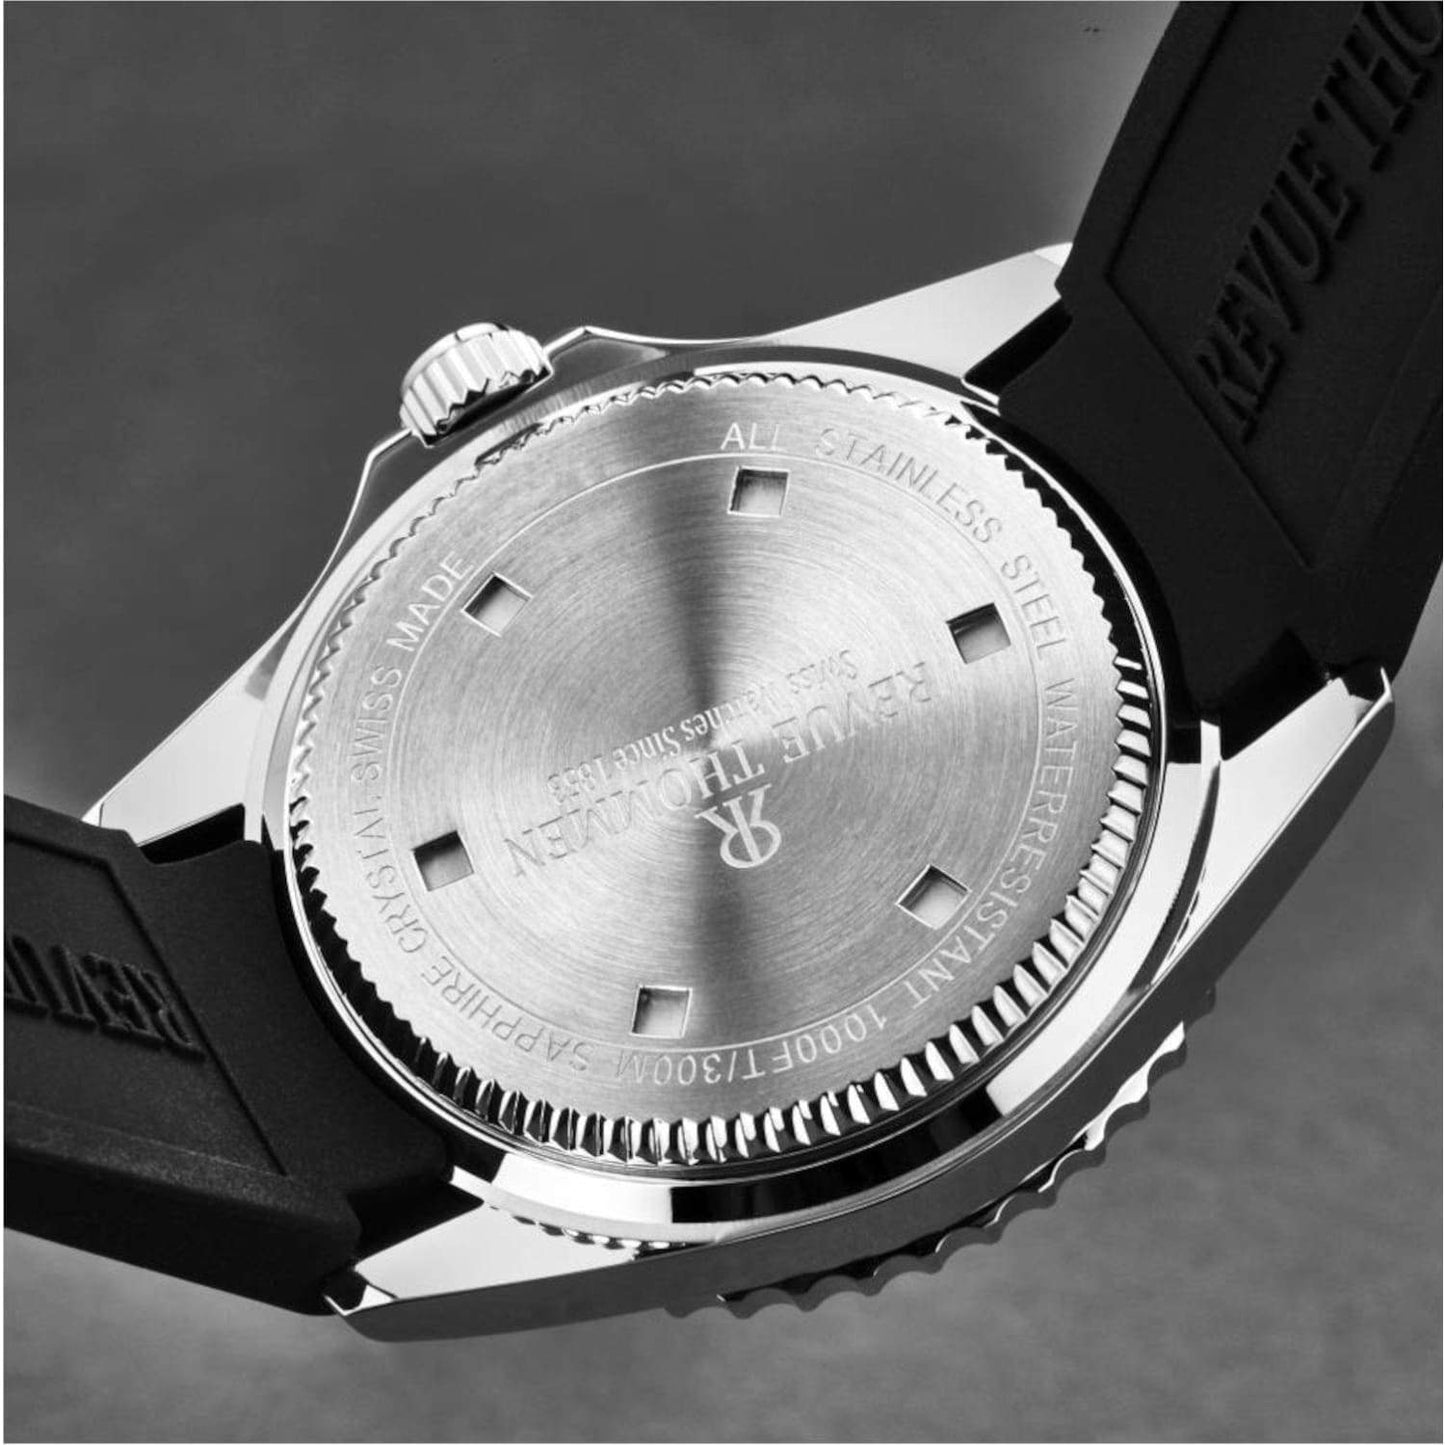 Revue Thommen 17571.2823 Men's 'Diver' Blue Dial Rubber Strap Swiss Automatic Watch